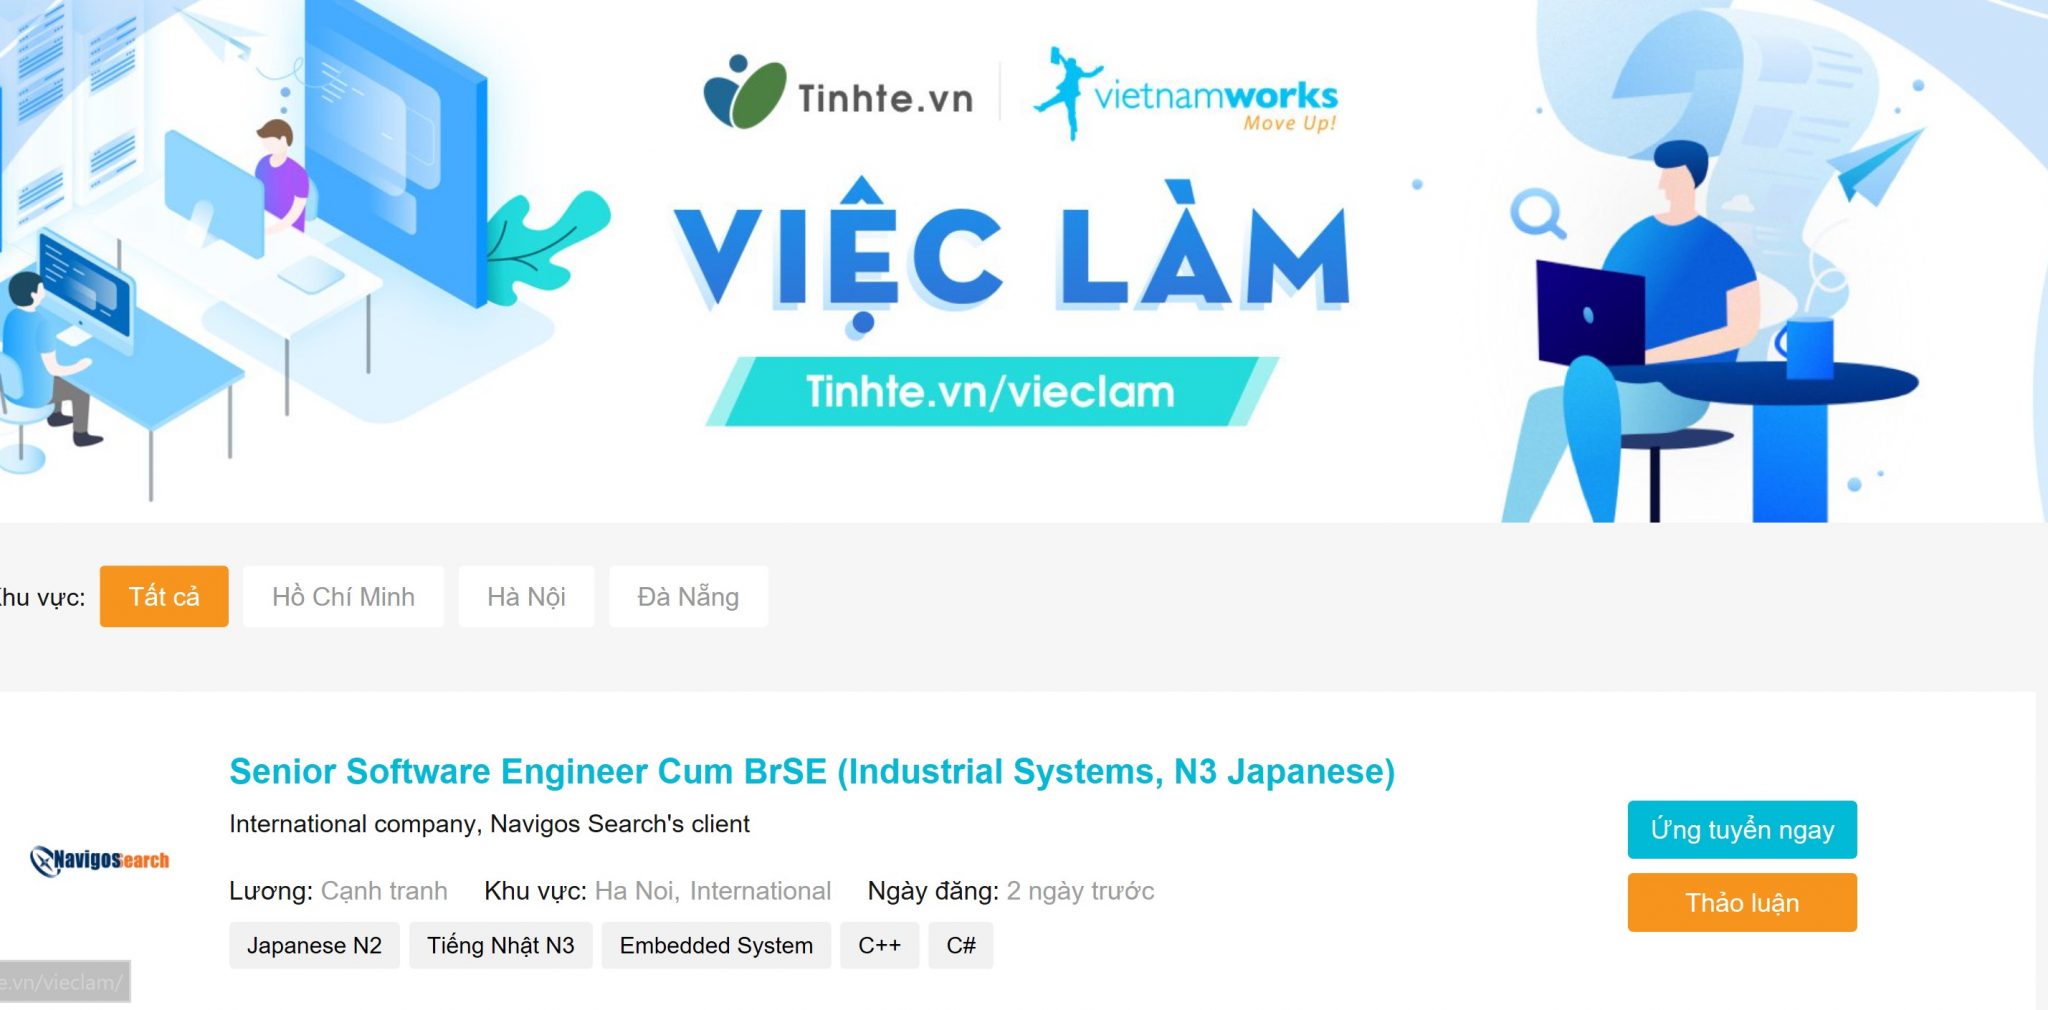 Vietnamworks.com - 3.1 triệu lượt truy cập/tháng